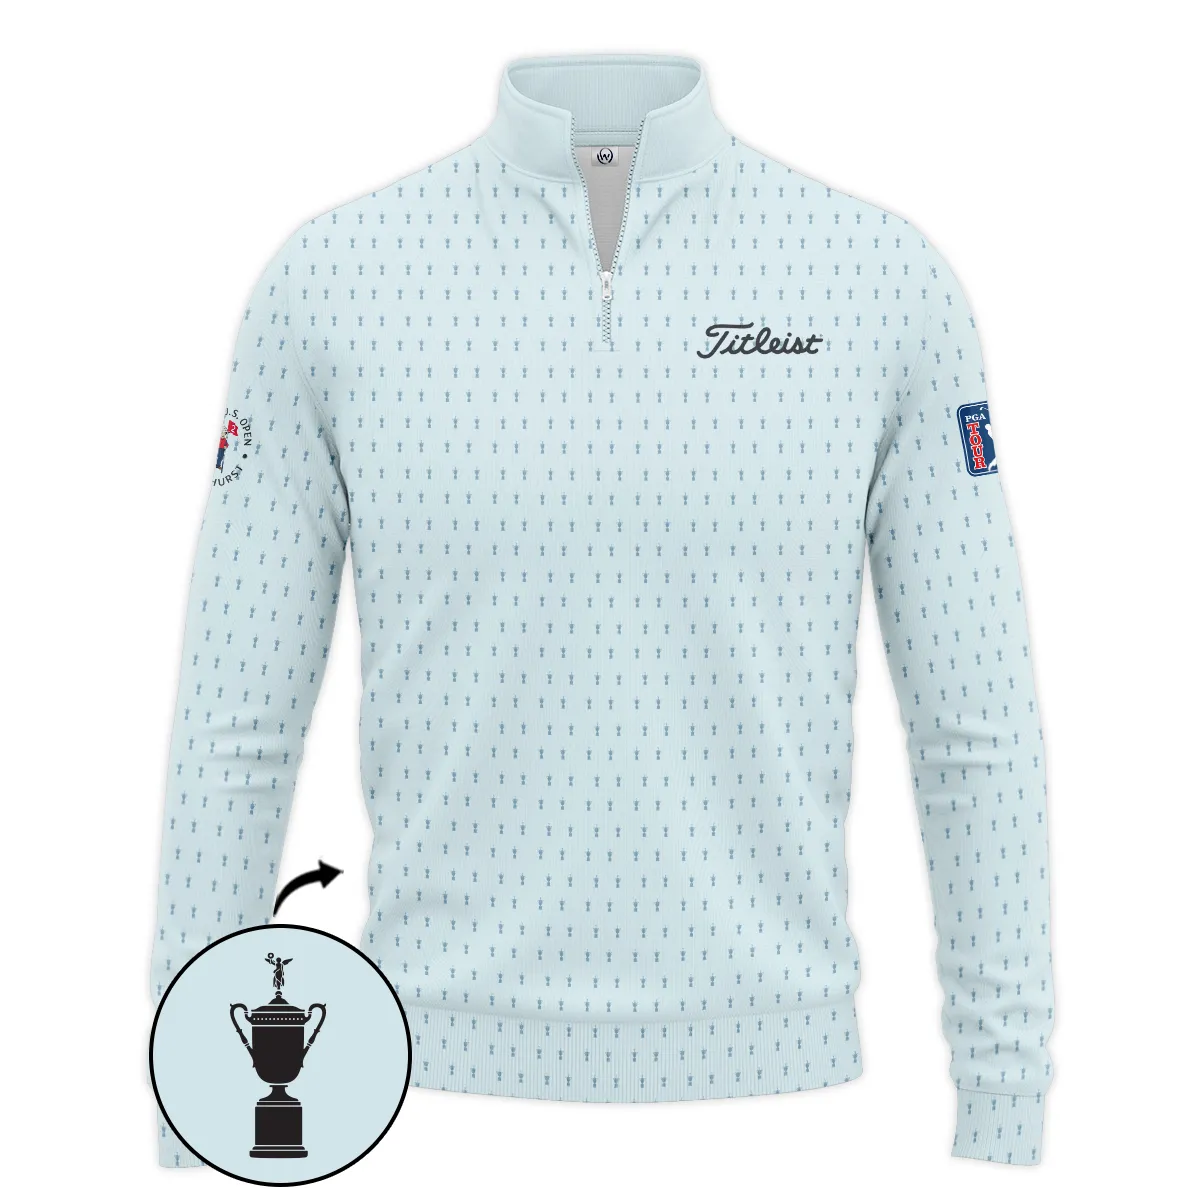 Golf Pattern Cup Light Blue Mix Green 124th U.S. Open Pinehurst Pinehurst Titleist Zipper Hoodie Shirt Style Classic